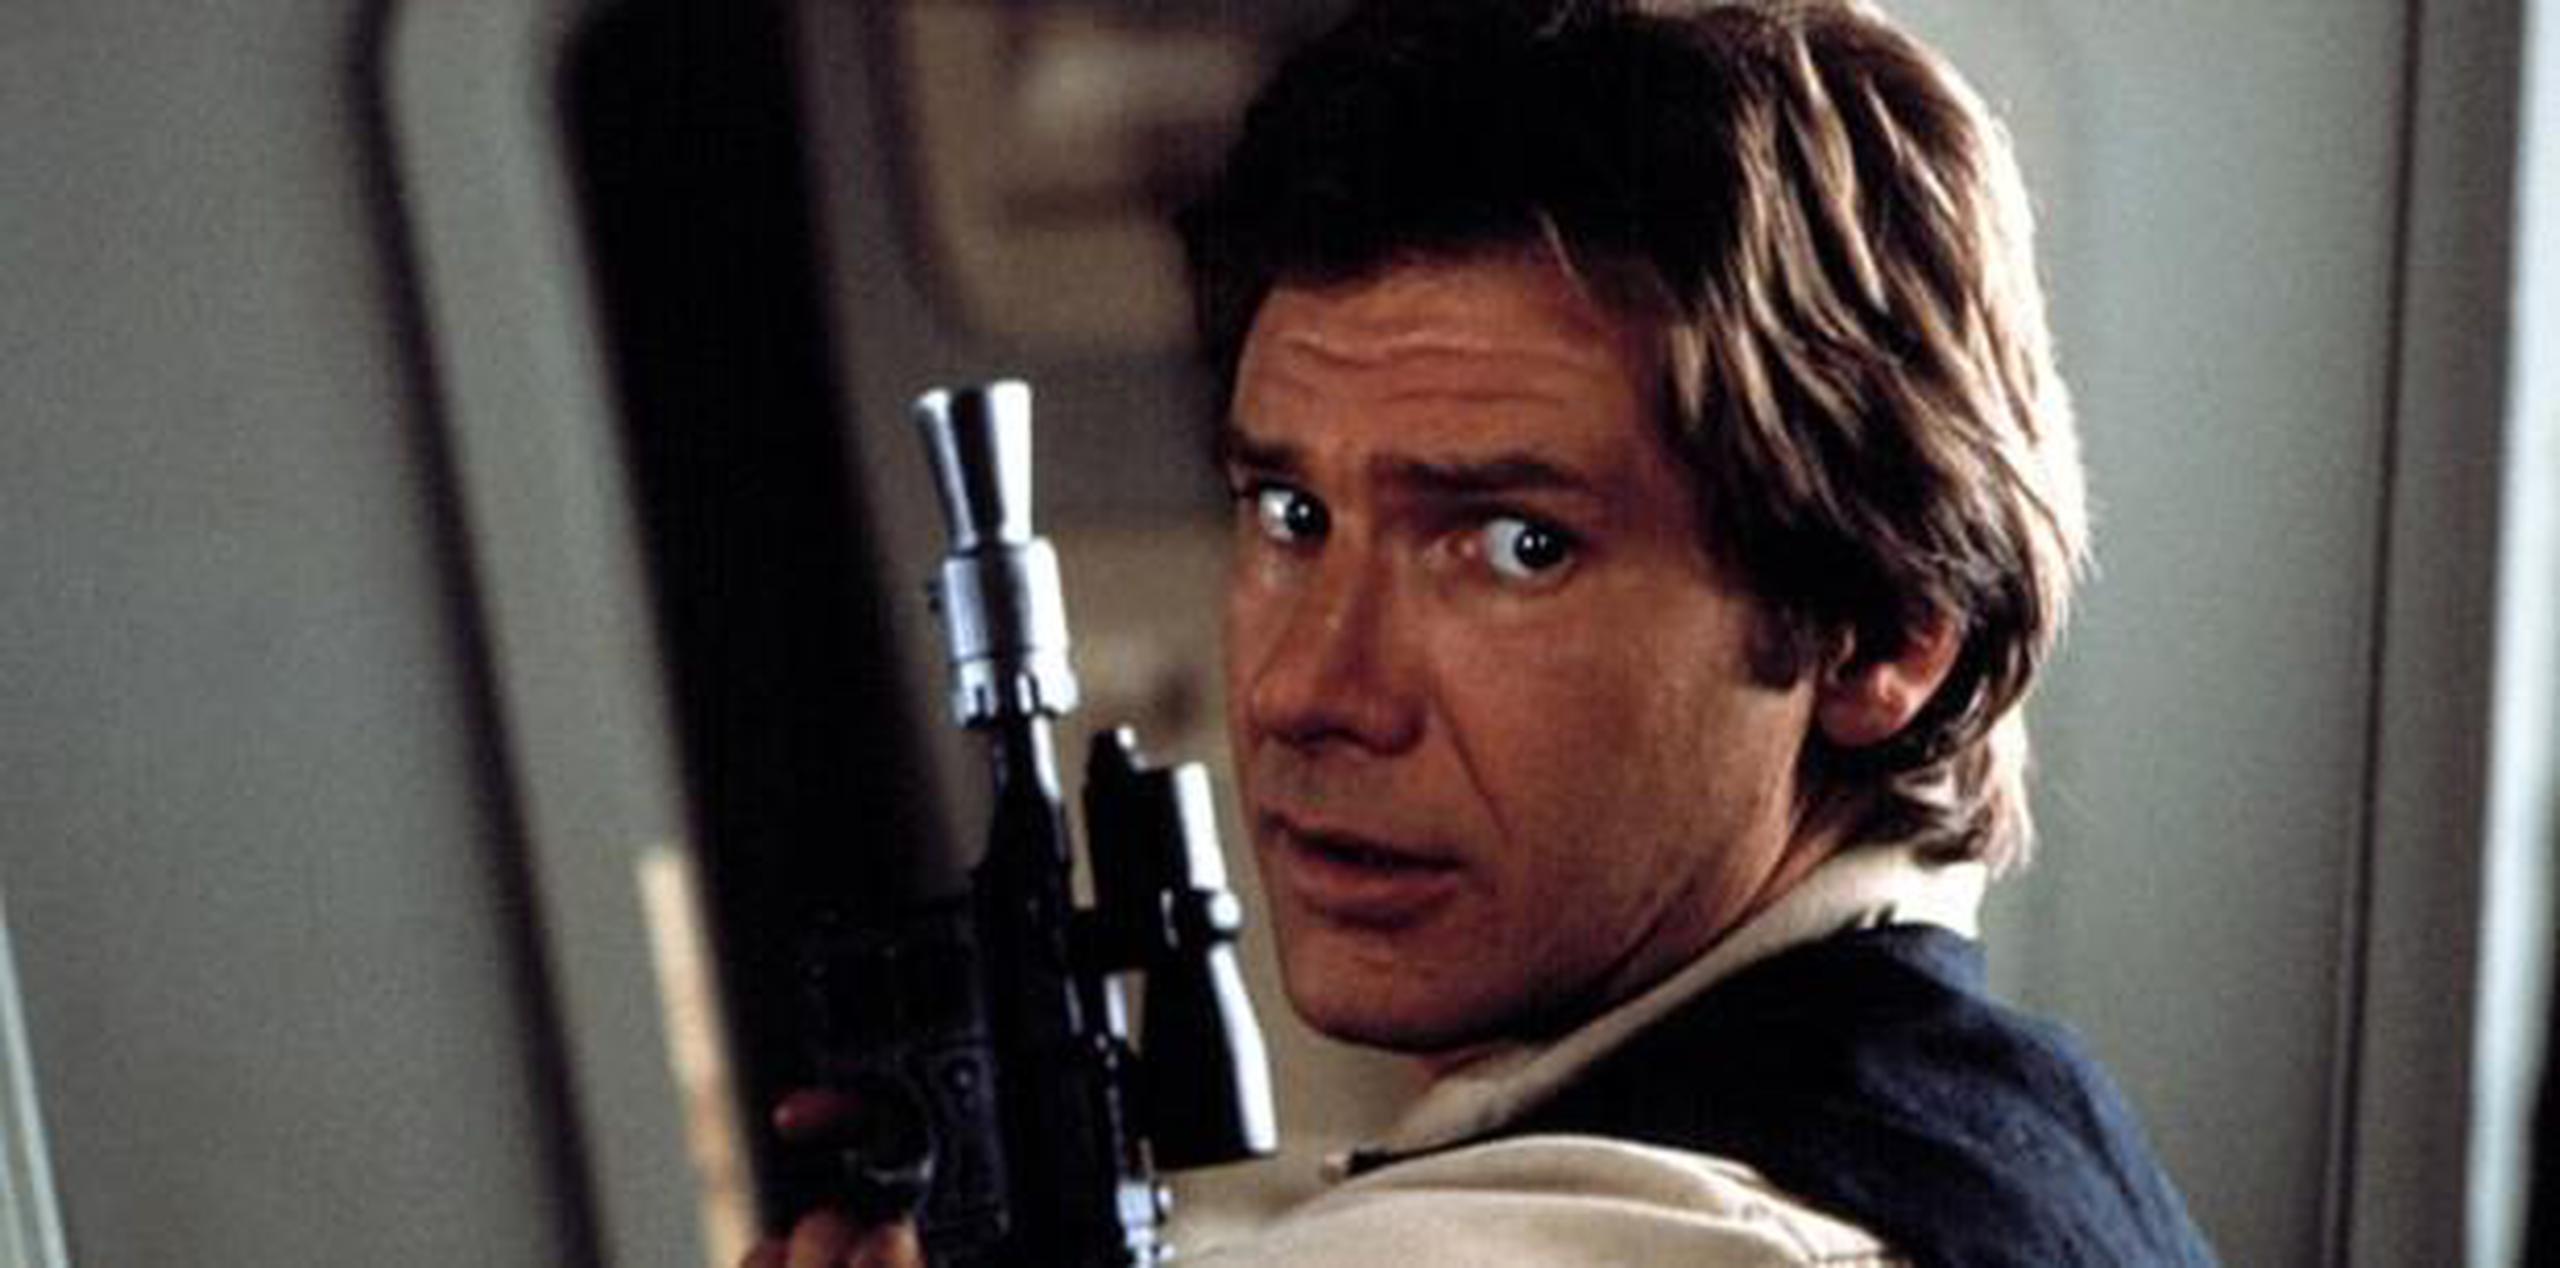 El arma fue diseñada específicamente para la película "Return of the Jedi". (Disney / Lucasfilm)